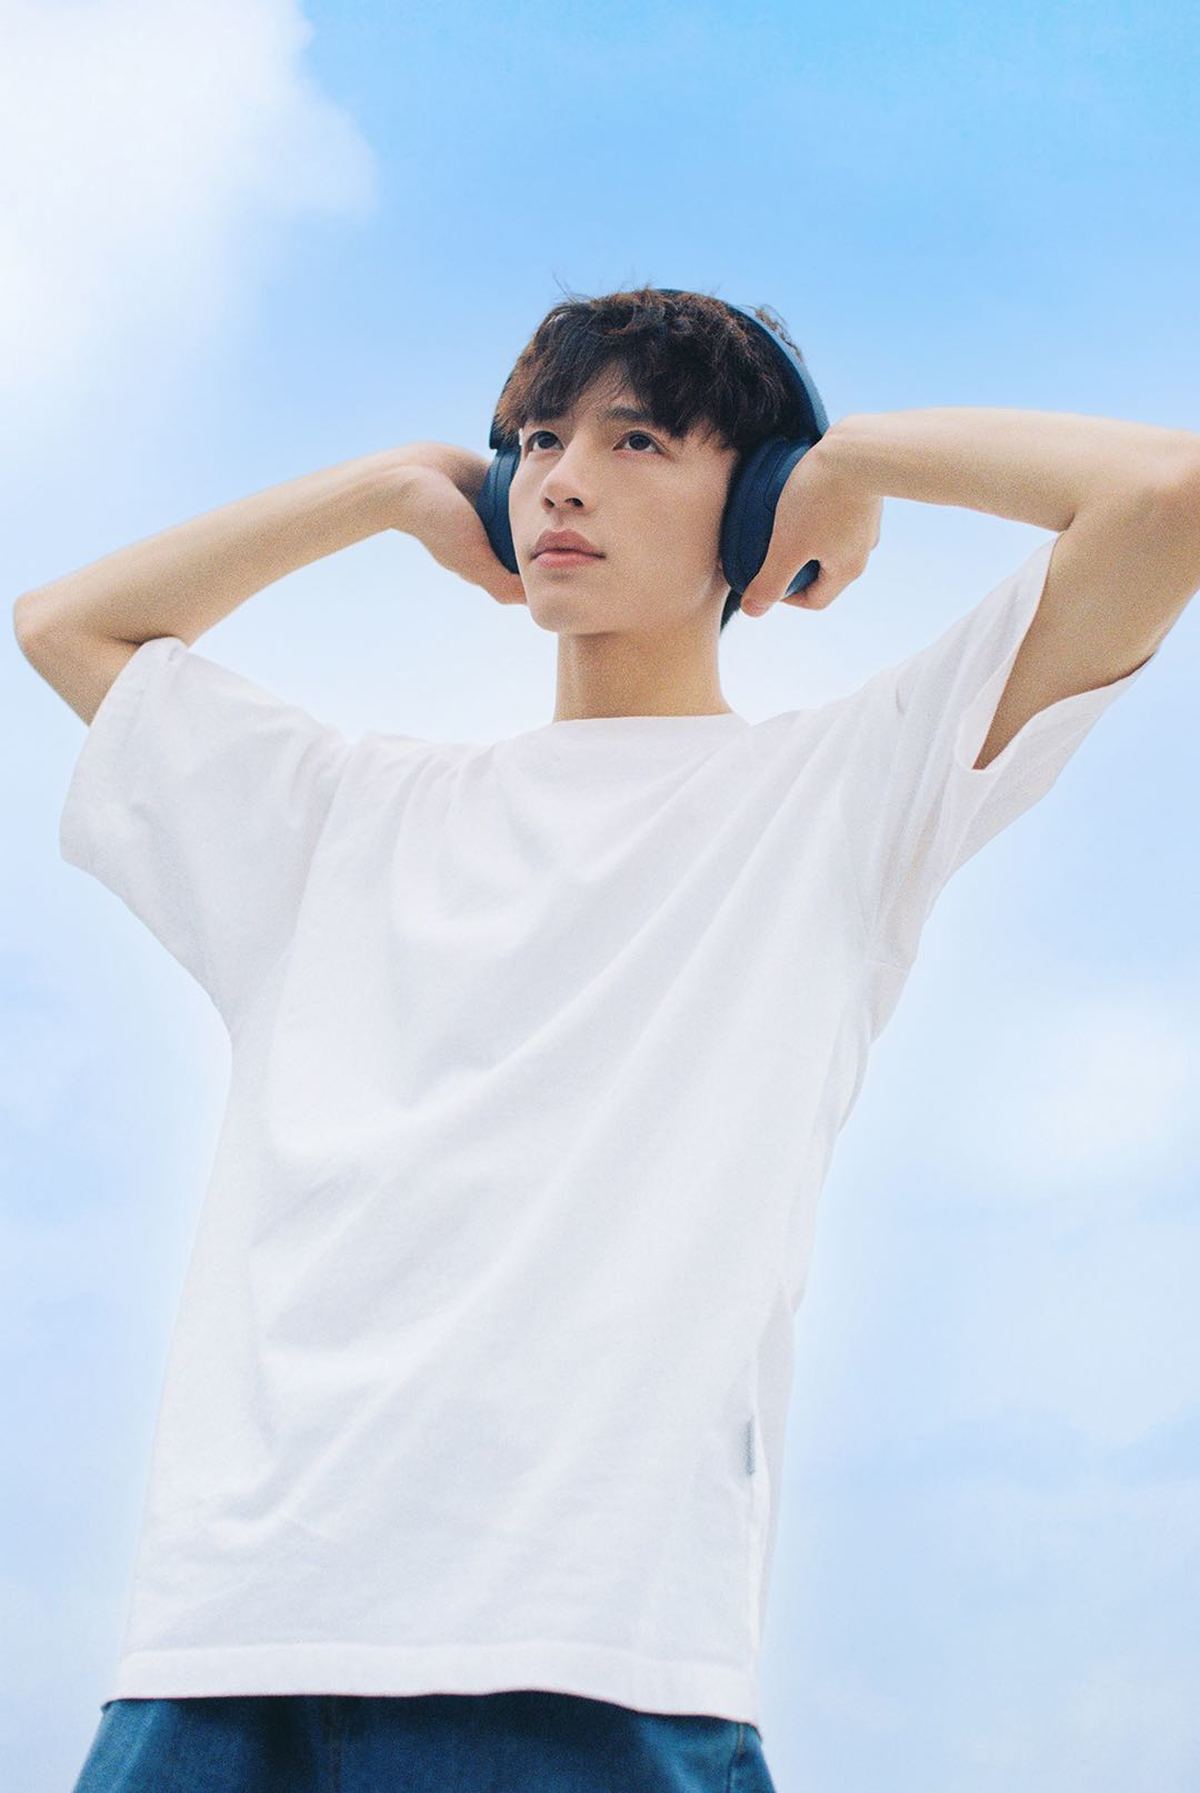 一个戴白色耳机年轻人站在蔚蓝的天空下